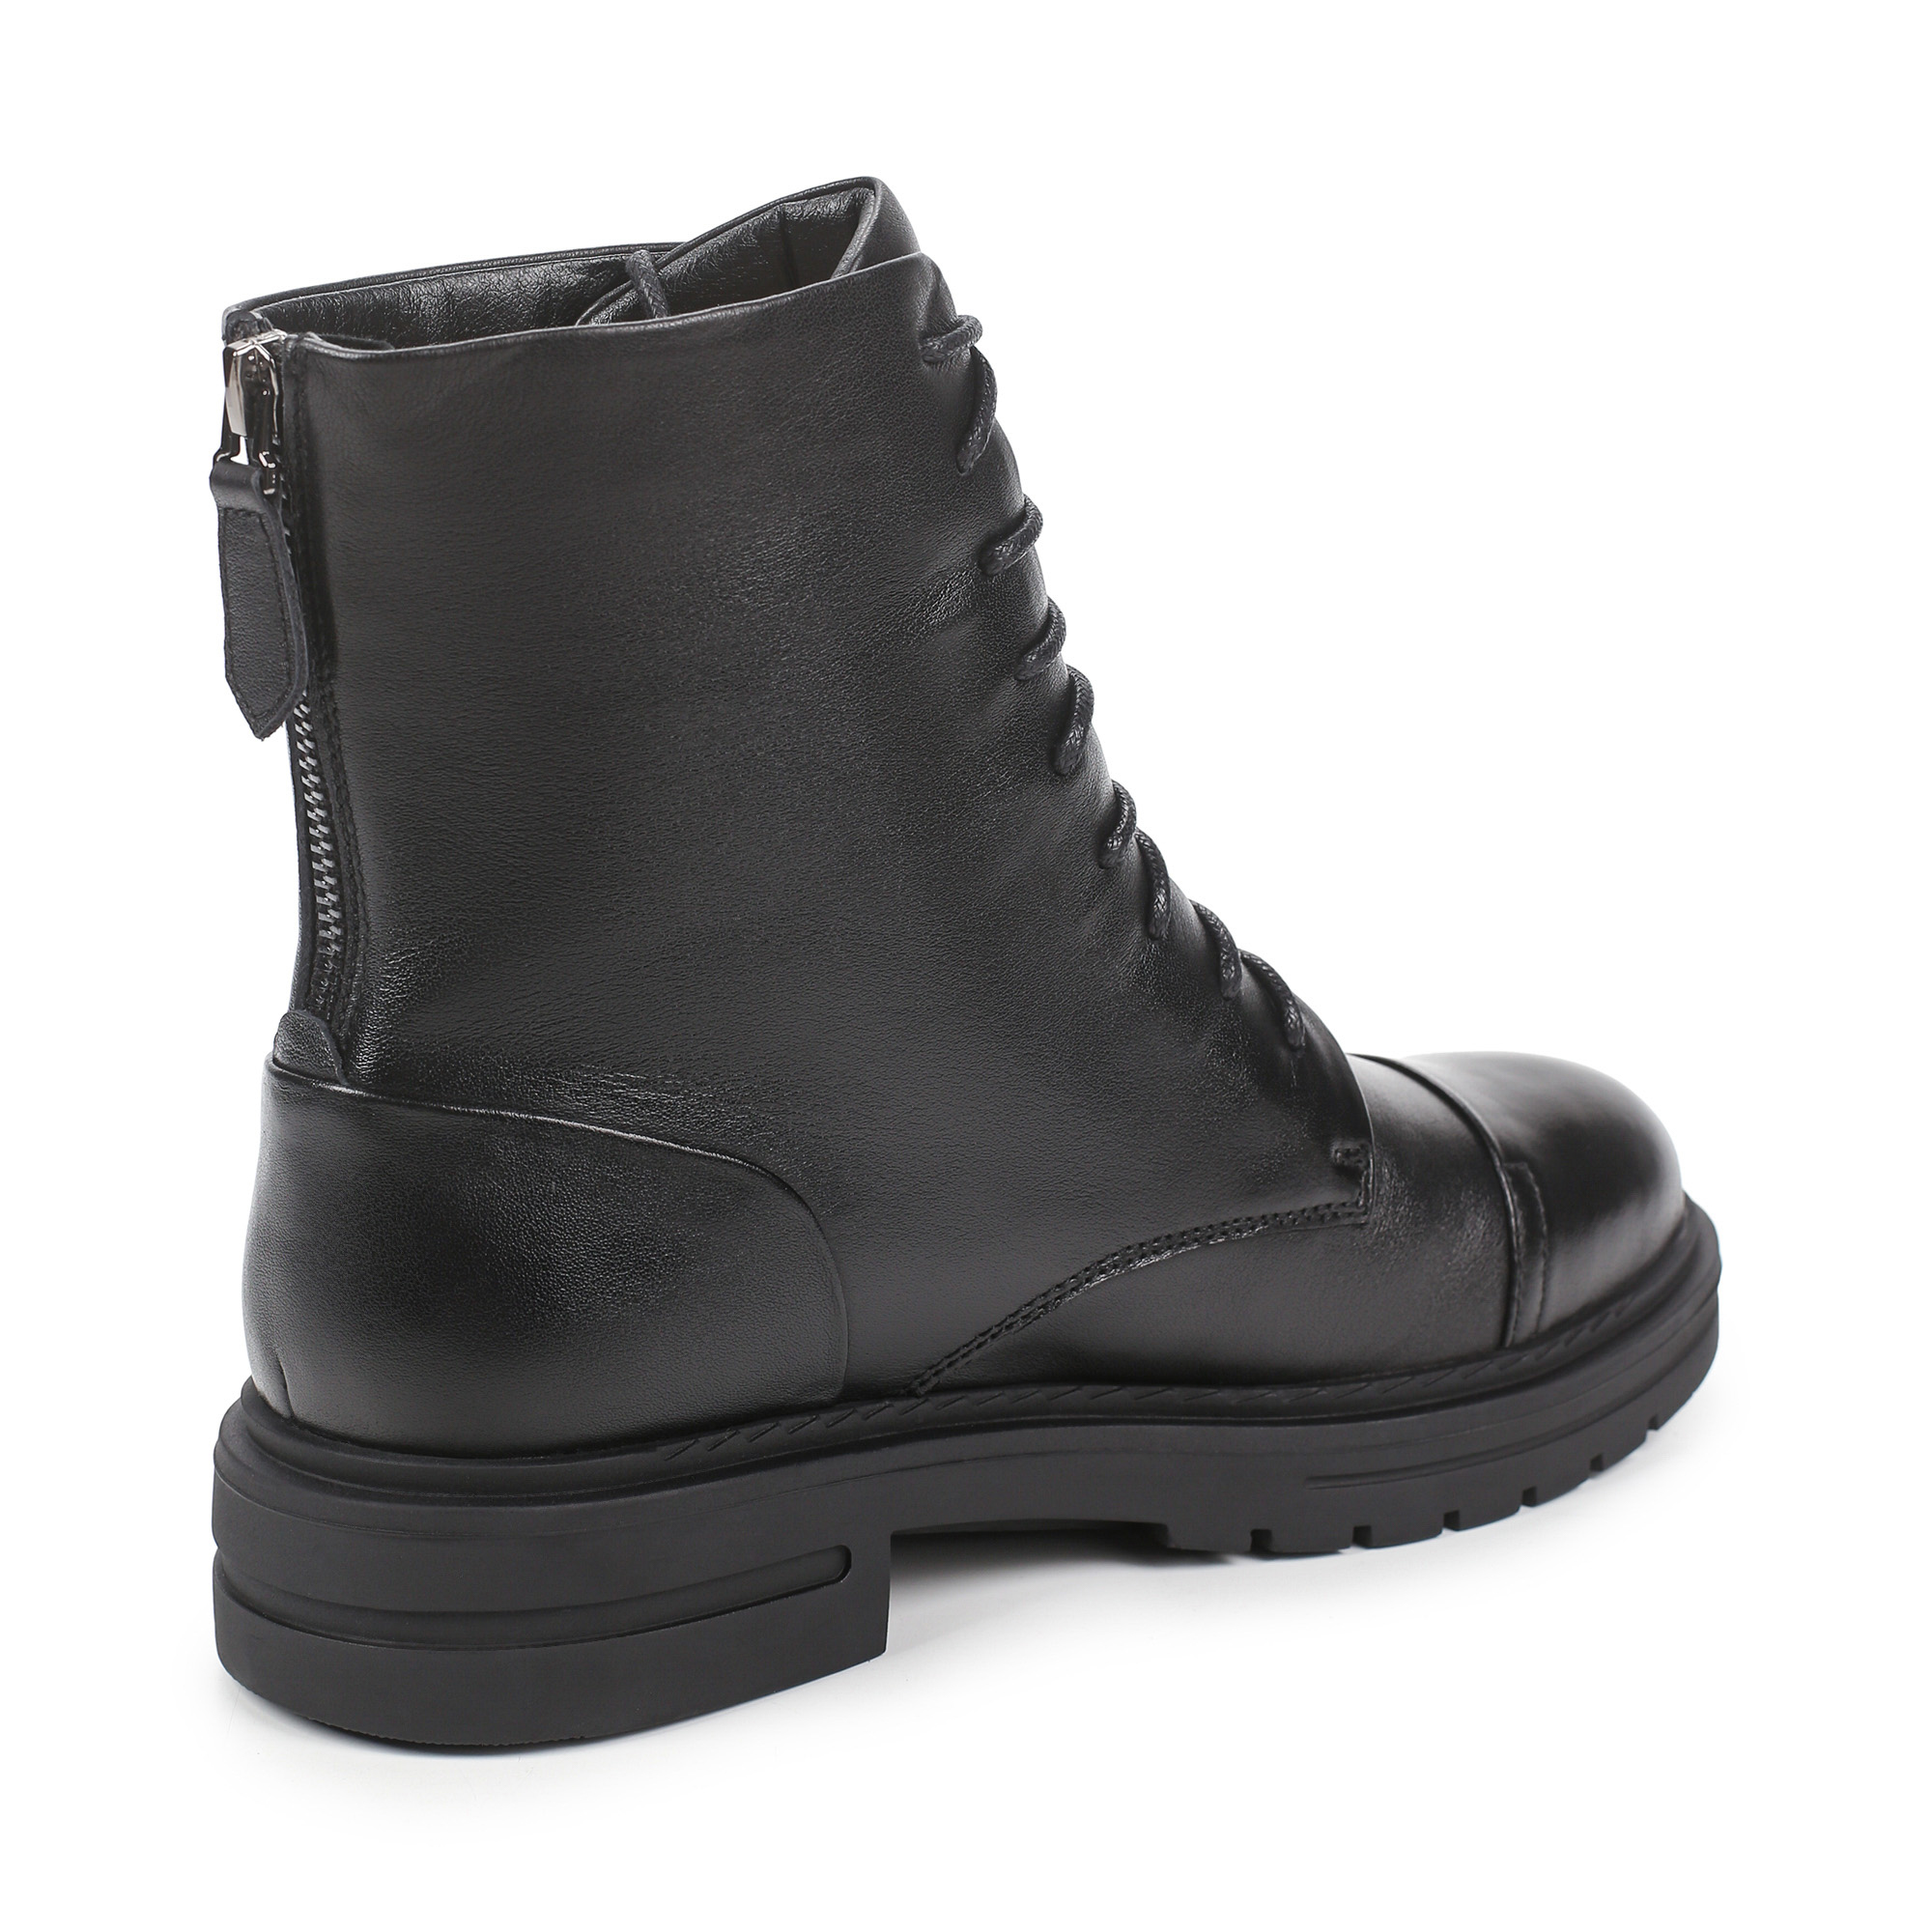 Ботинки Thomas Munz 233-695A-2102, цвет черный, размер 39 - фото 3